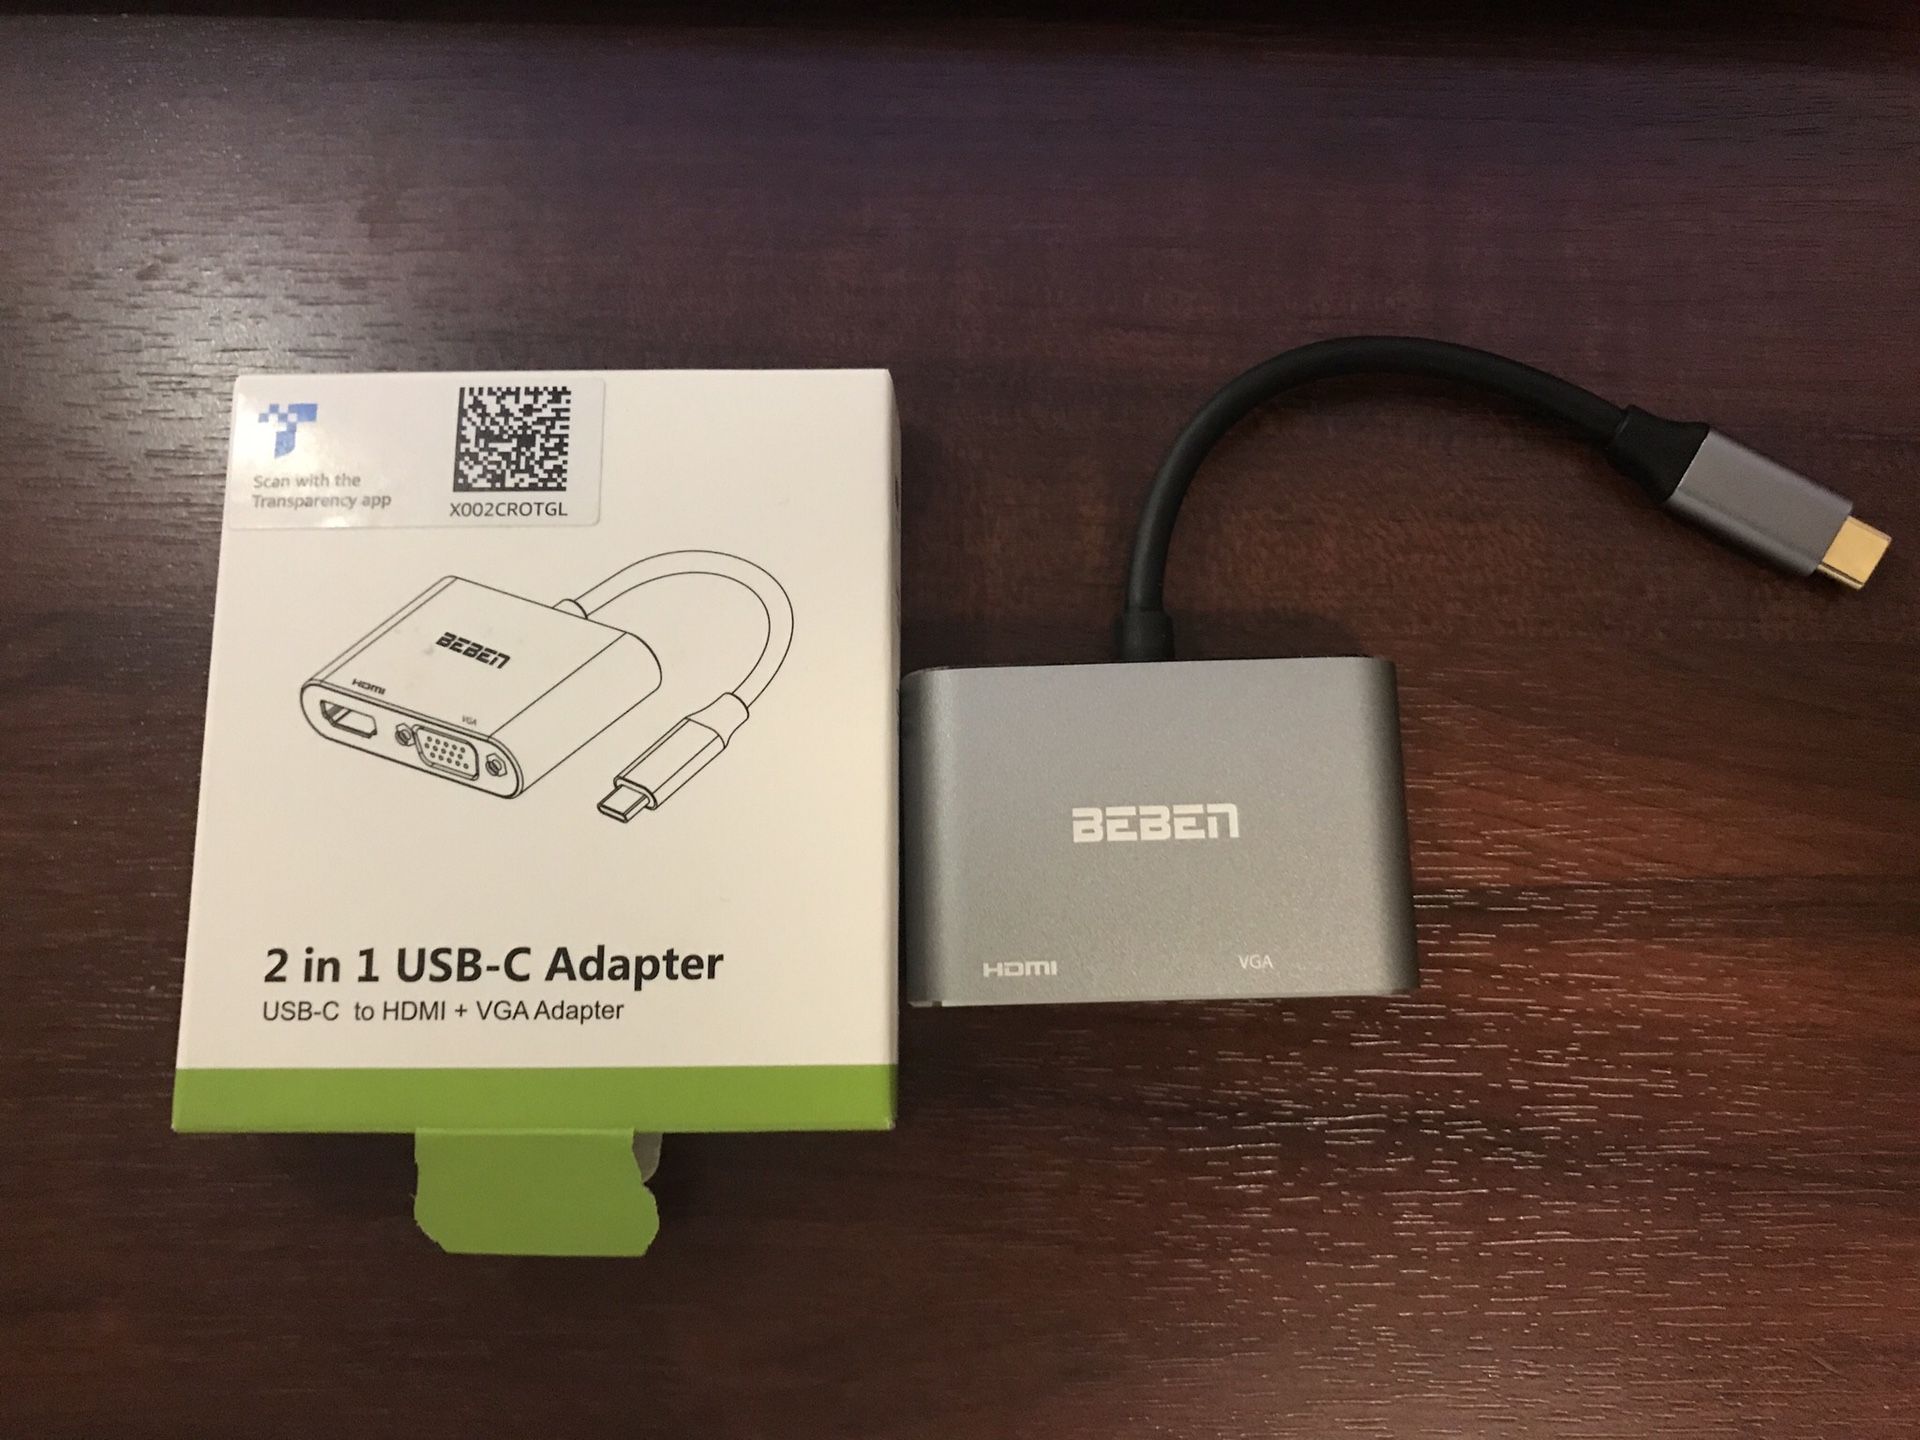 USB C Adapter - HDMI and VGA Adapter